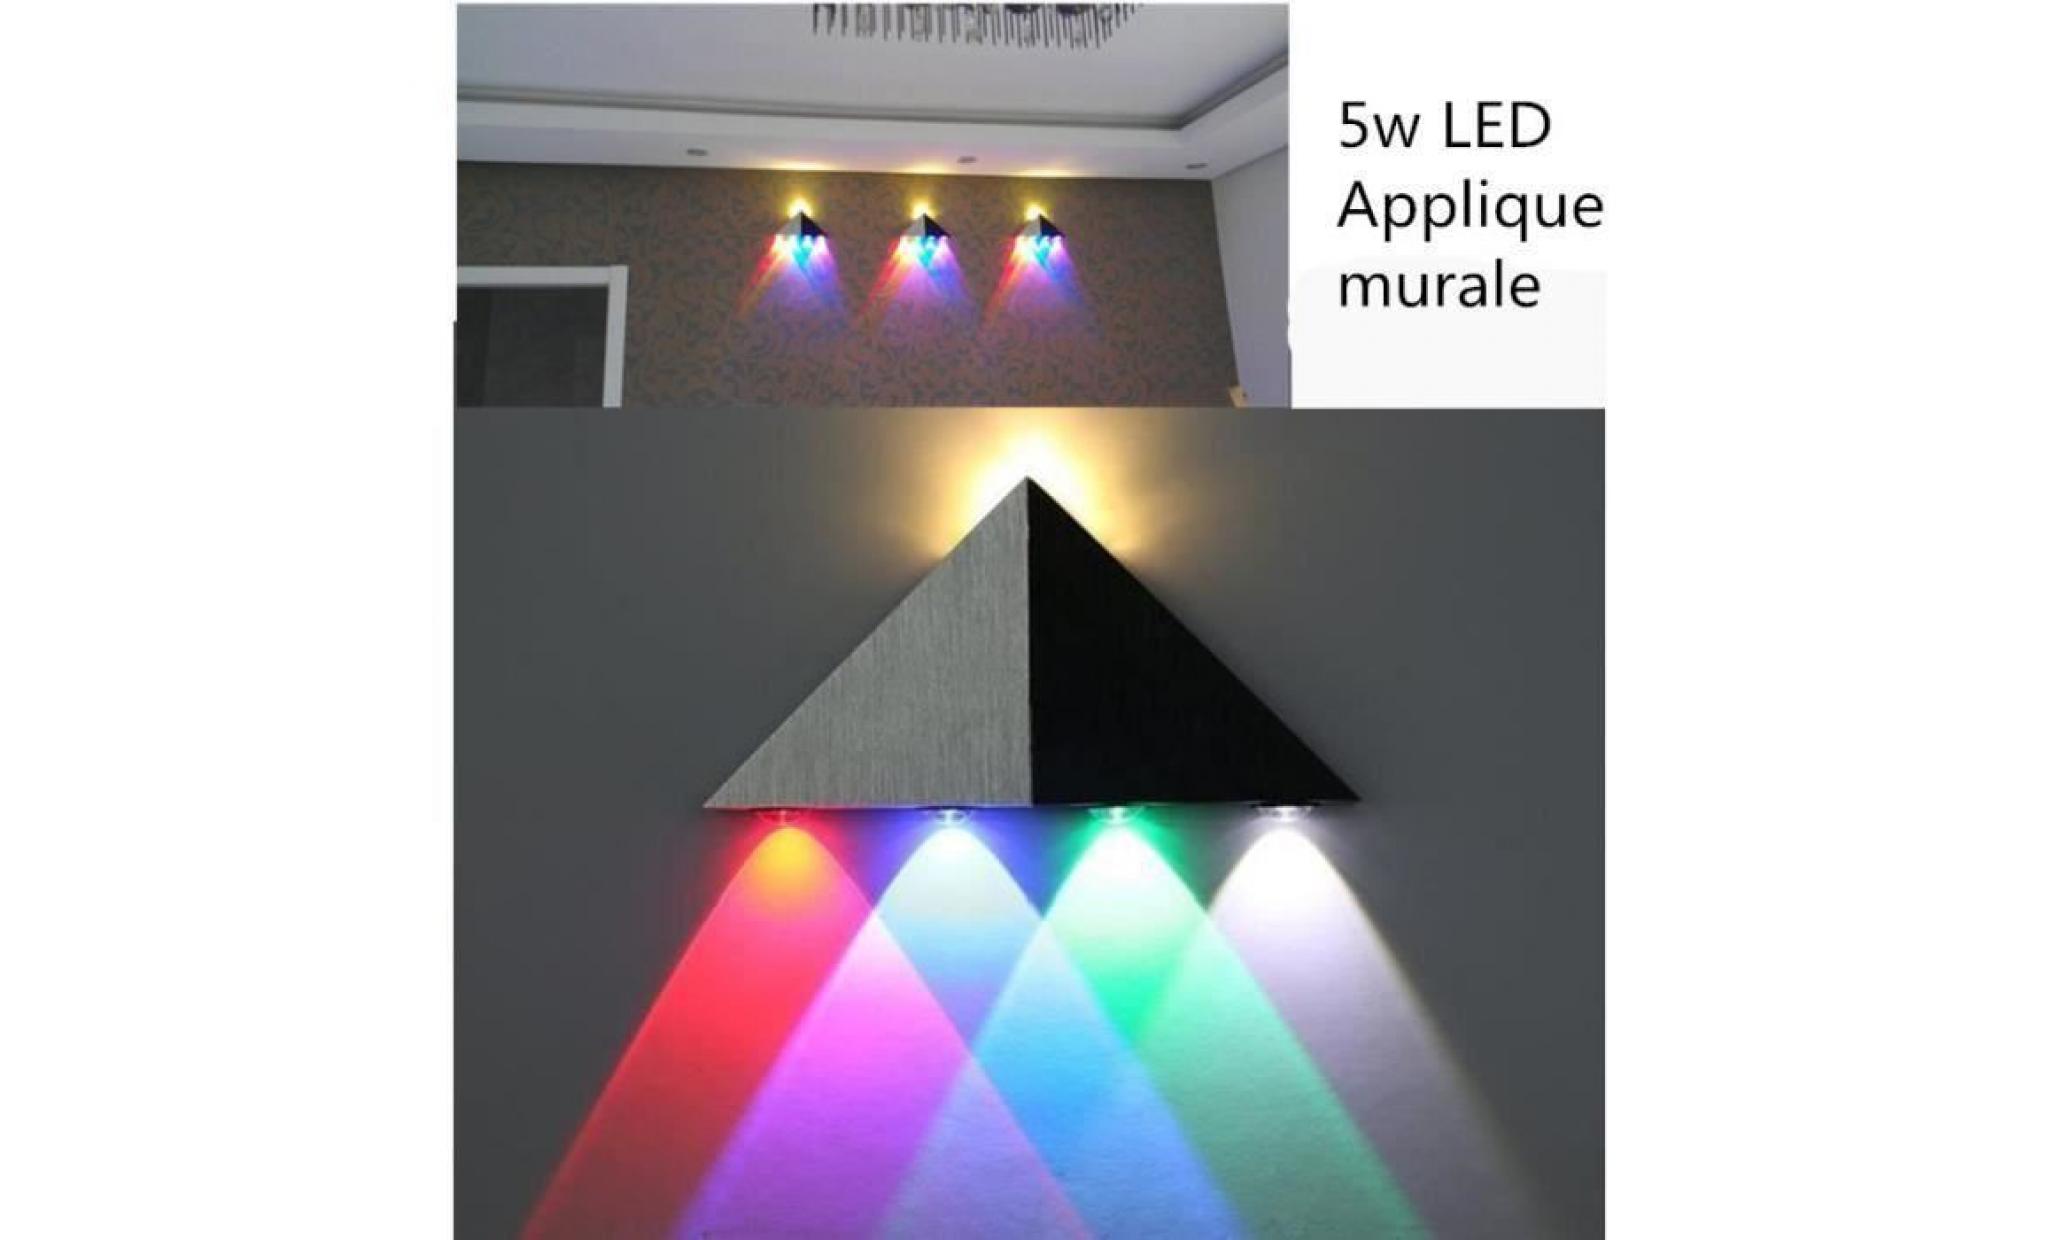 （multicolore）5w led applique mural triangle eclairage décoratif lampe design moderne lampe murale en aluminium pour chambre salon